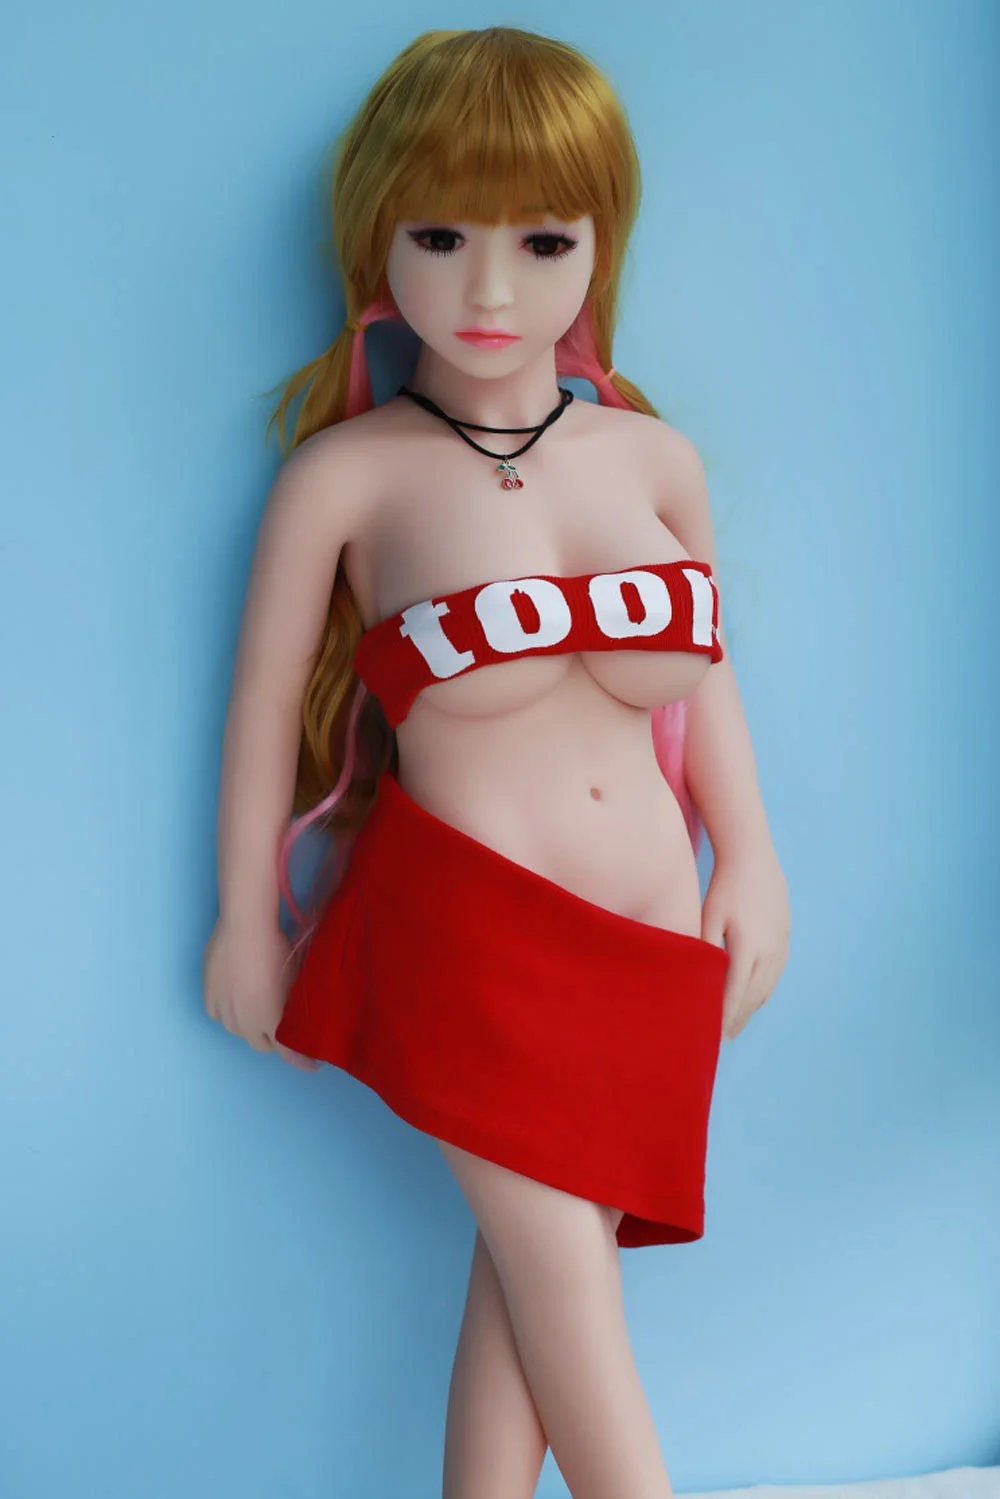 Mini sex doll taking off pants